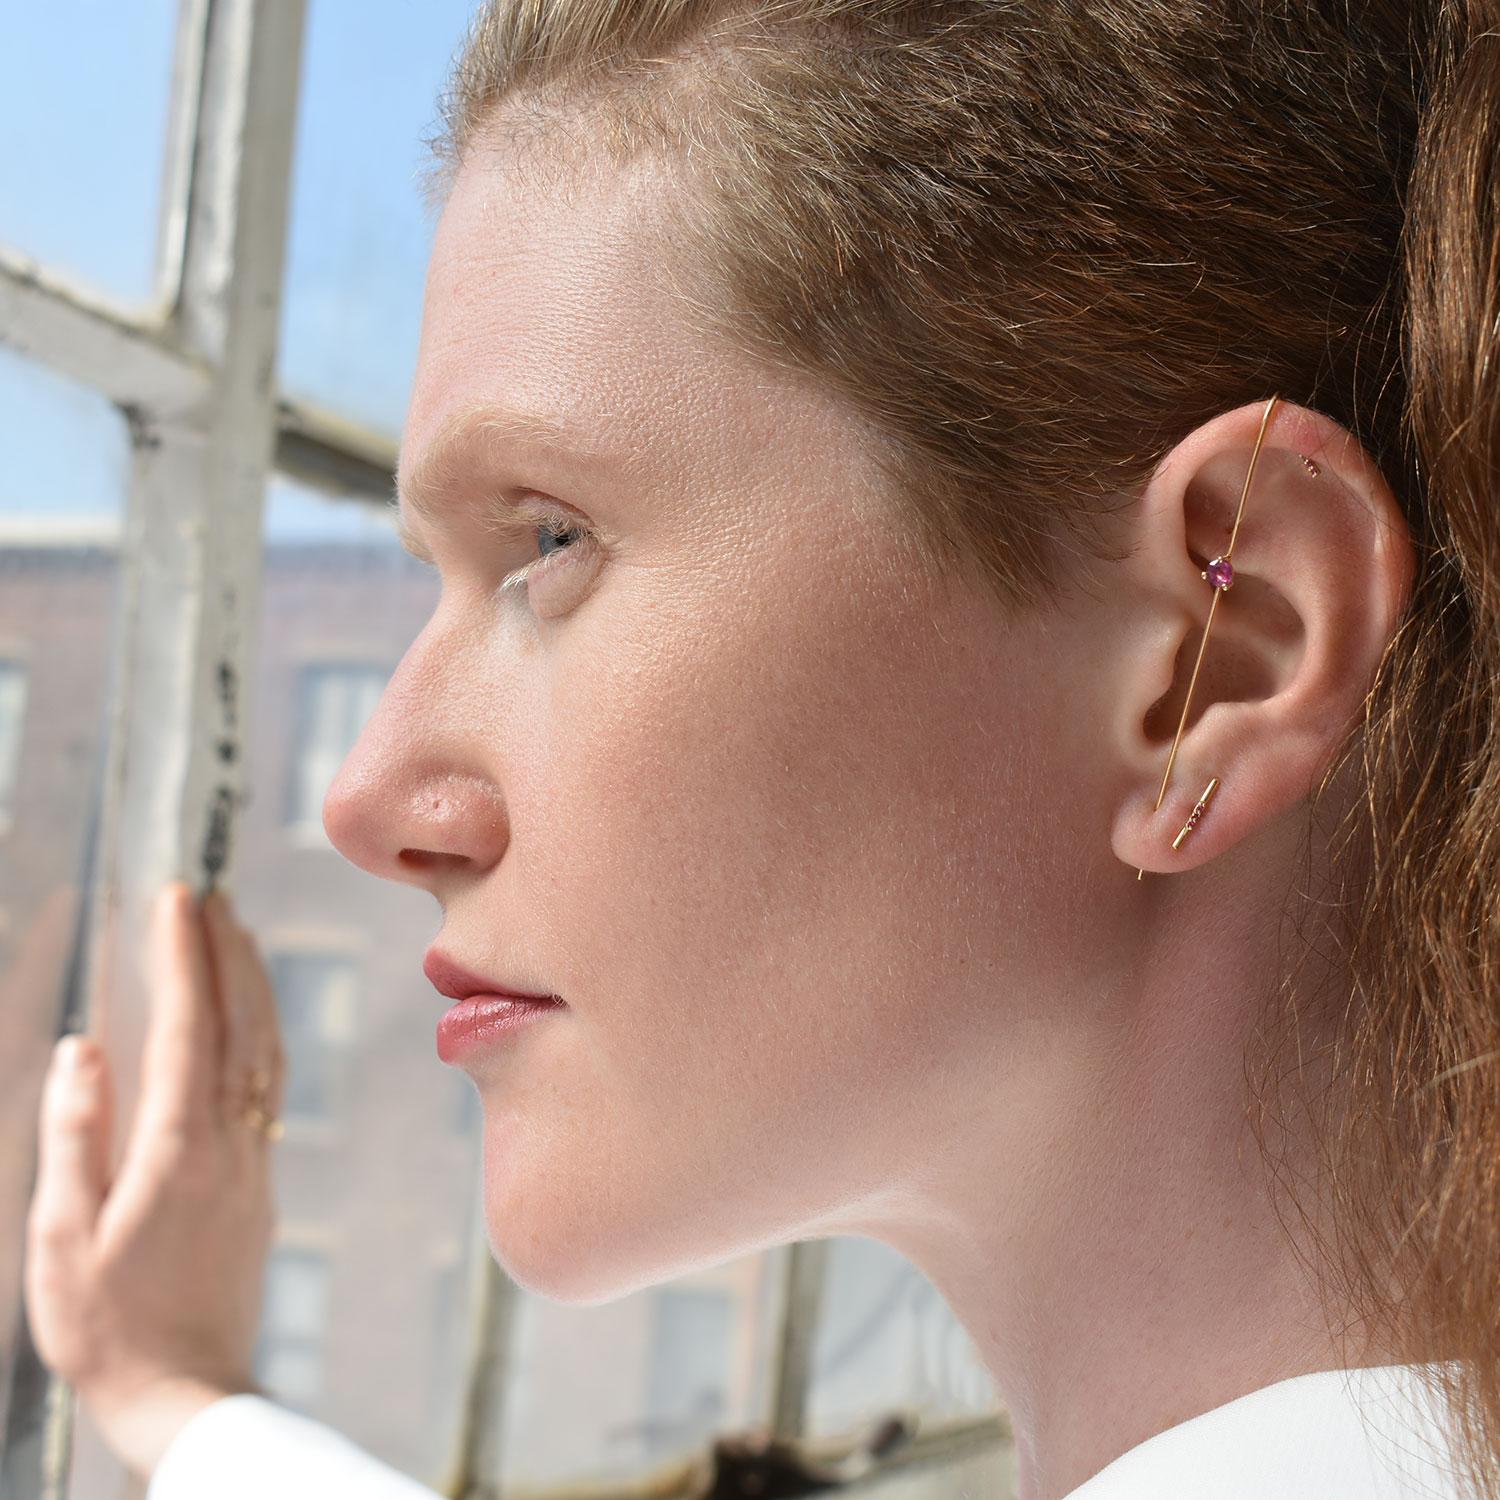 Der bekannte Signature Needle Earring mit einem Hauch von natürlichem Edelstein. Mit ihrem modernen, unerwarteten Design und einem Hauch von Helligkeit ist sie ein Muss für jeden Look.

Wie man es trägt:

Fädeln Sie das Ende des Hakens durch das